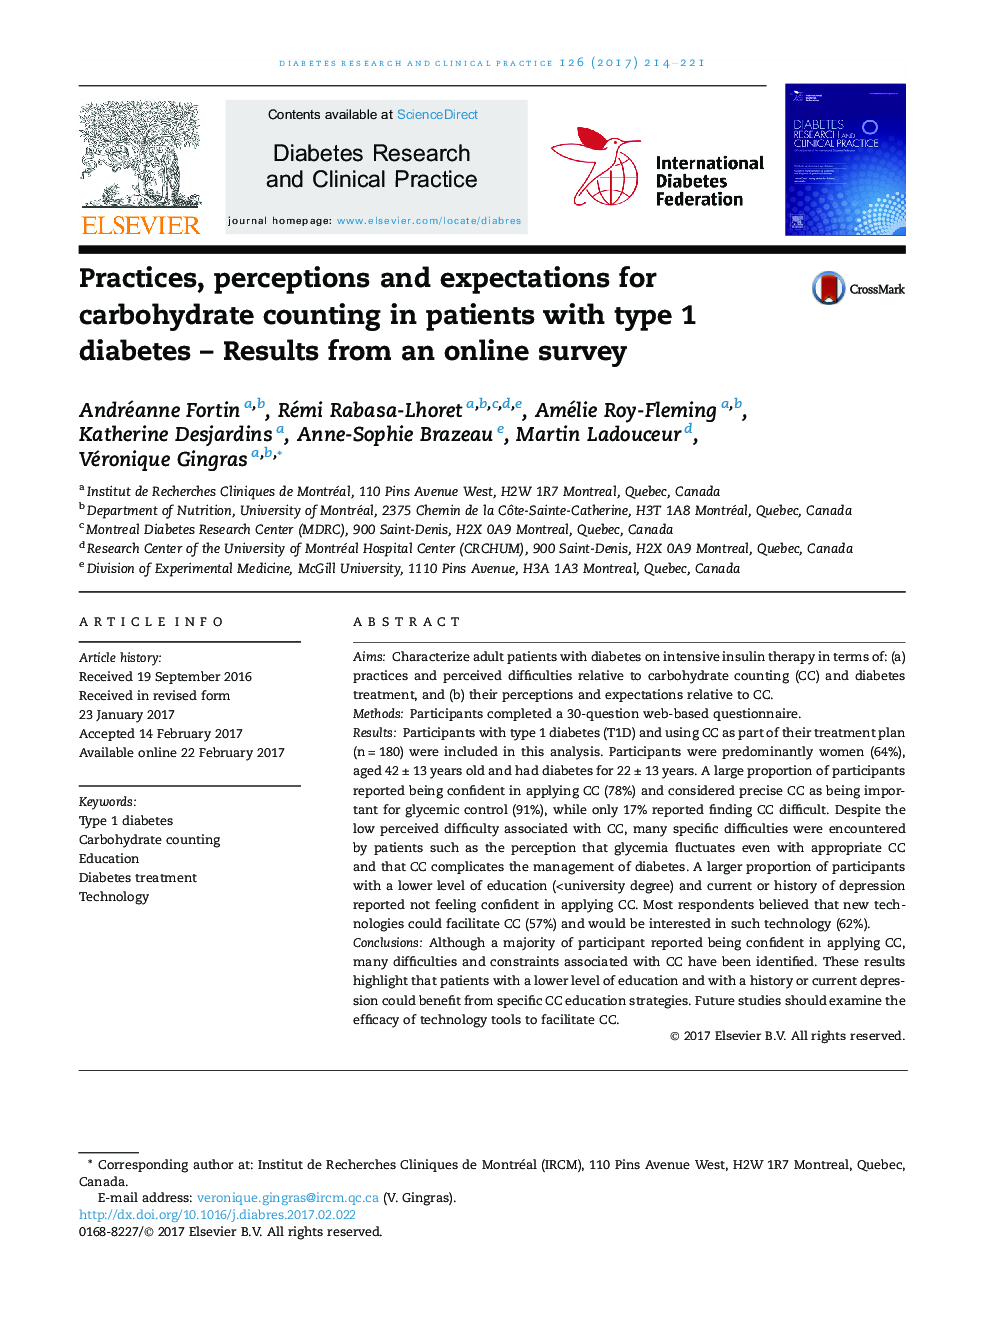 تمرینات، درک و انتظارات برای شمارش کربوهیدرات در بیماران مبتلا به دیابت نوع 1؟ نتایج یک نظرسنجی آنلاین 